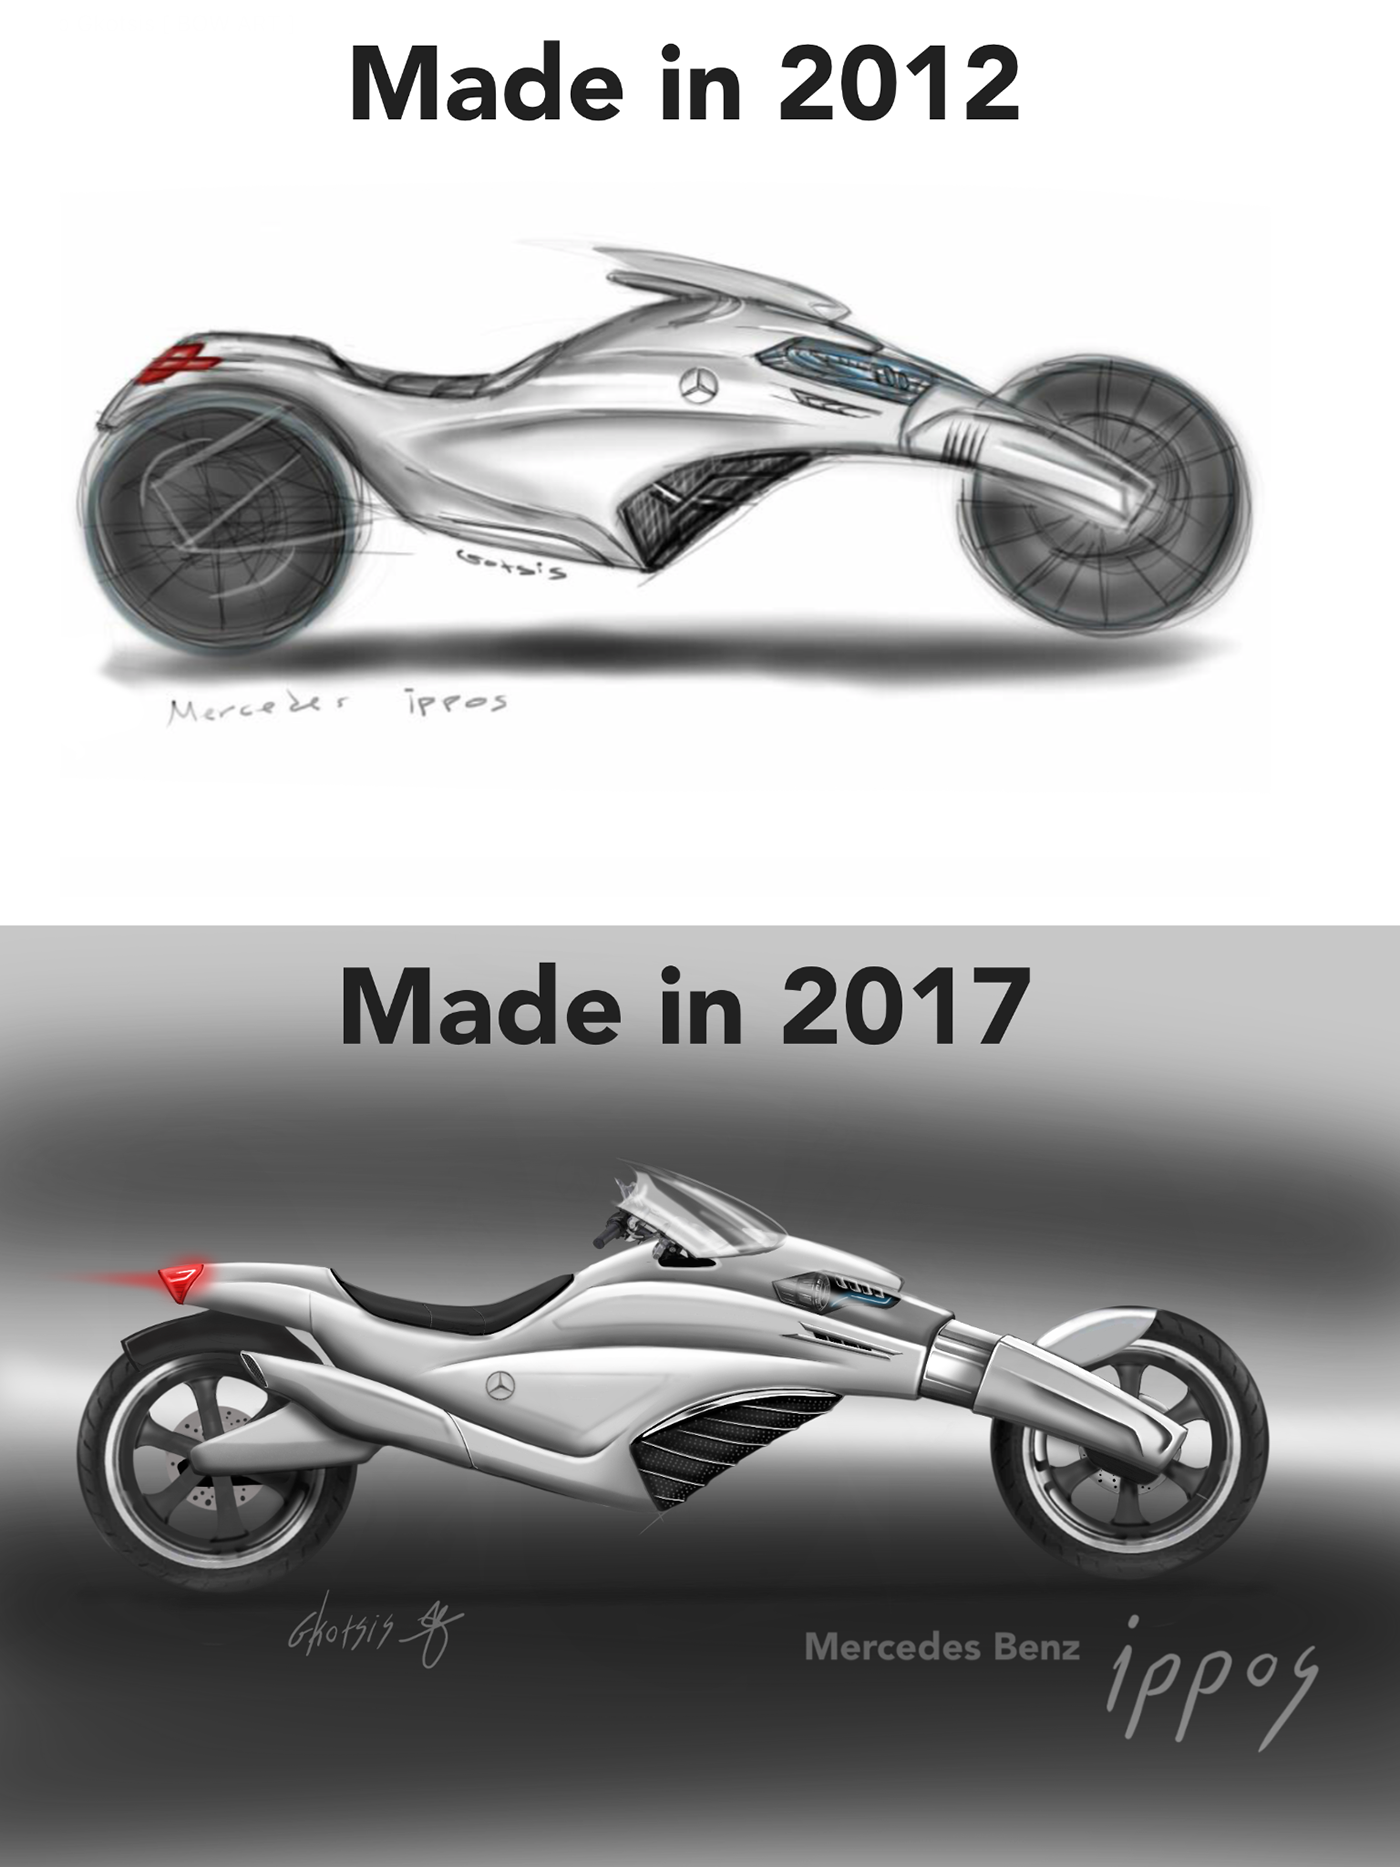 Mercedes Benz mercedes concept  concept concept design Automotive design automotive   moto motorcycle Motorcycle Concept conceptual design industrial design 